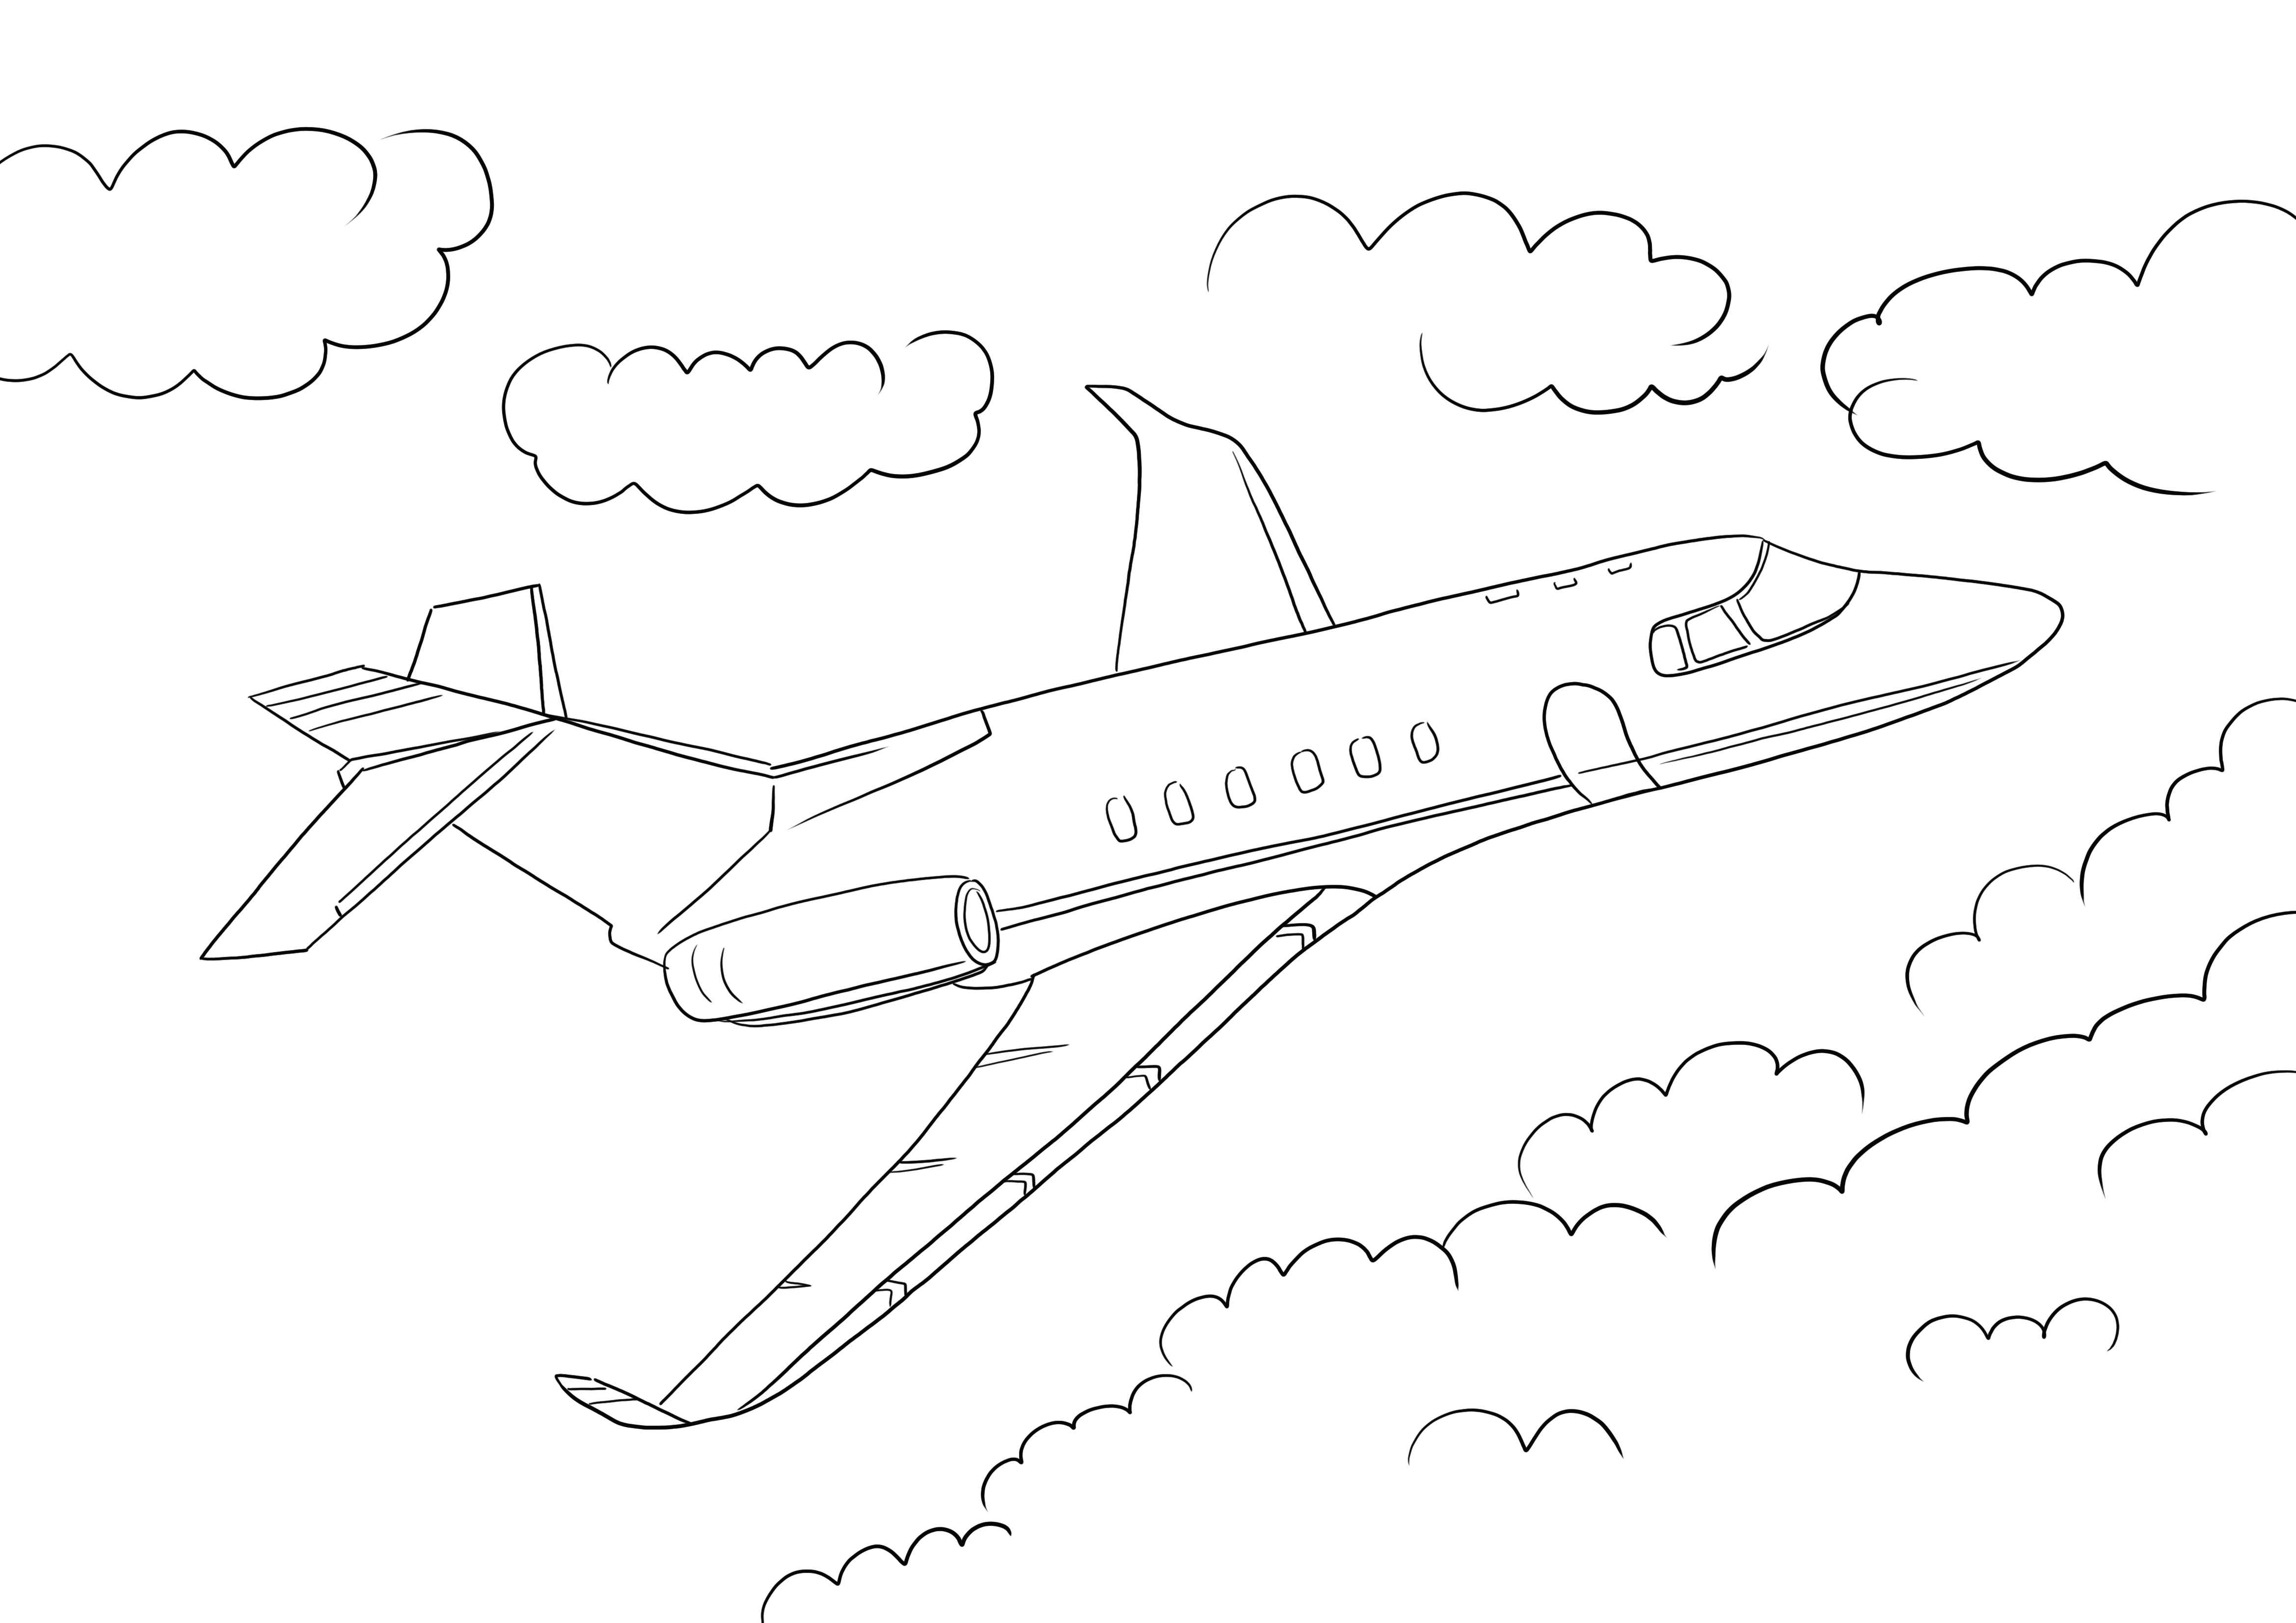 Easy Jet Airplane gratis para imprimir y colorear para niños de todas las edades